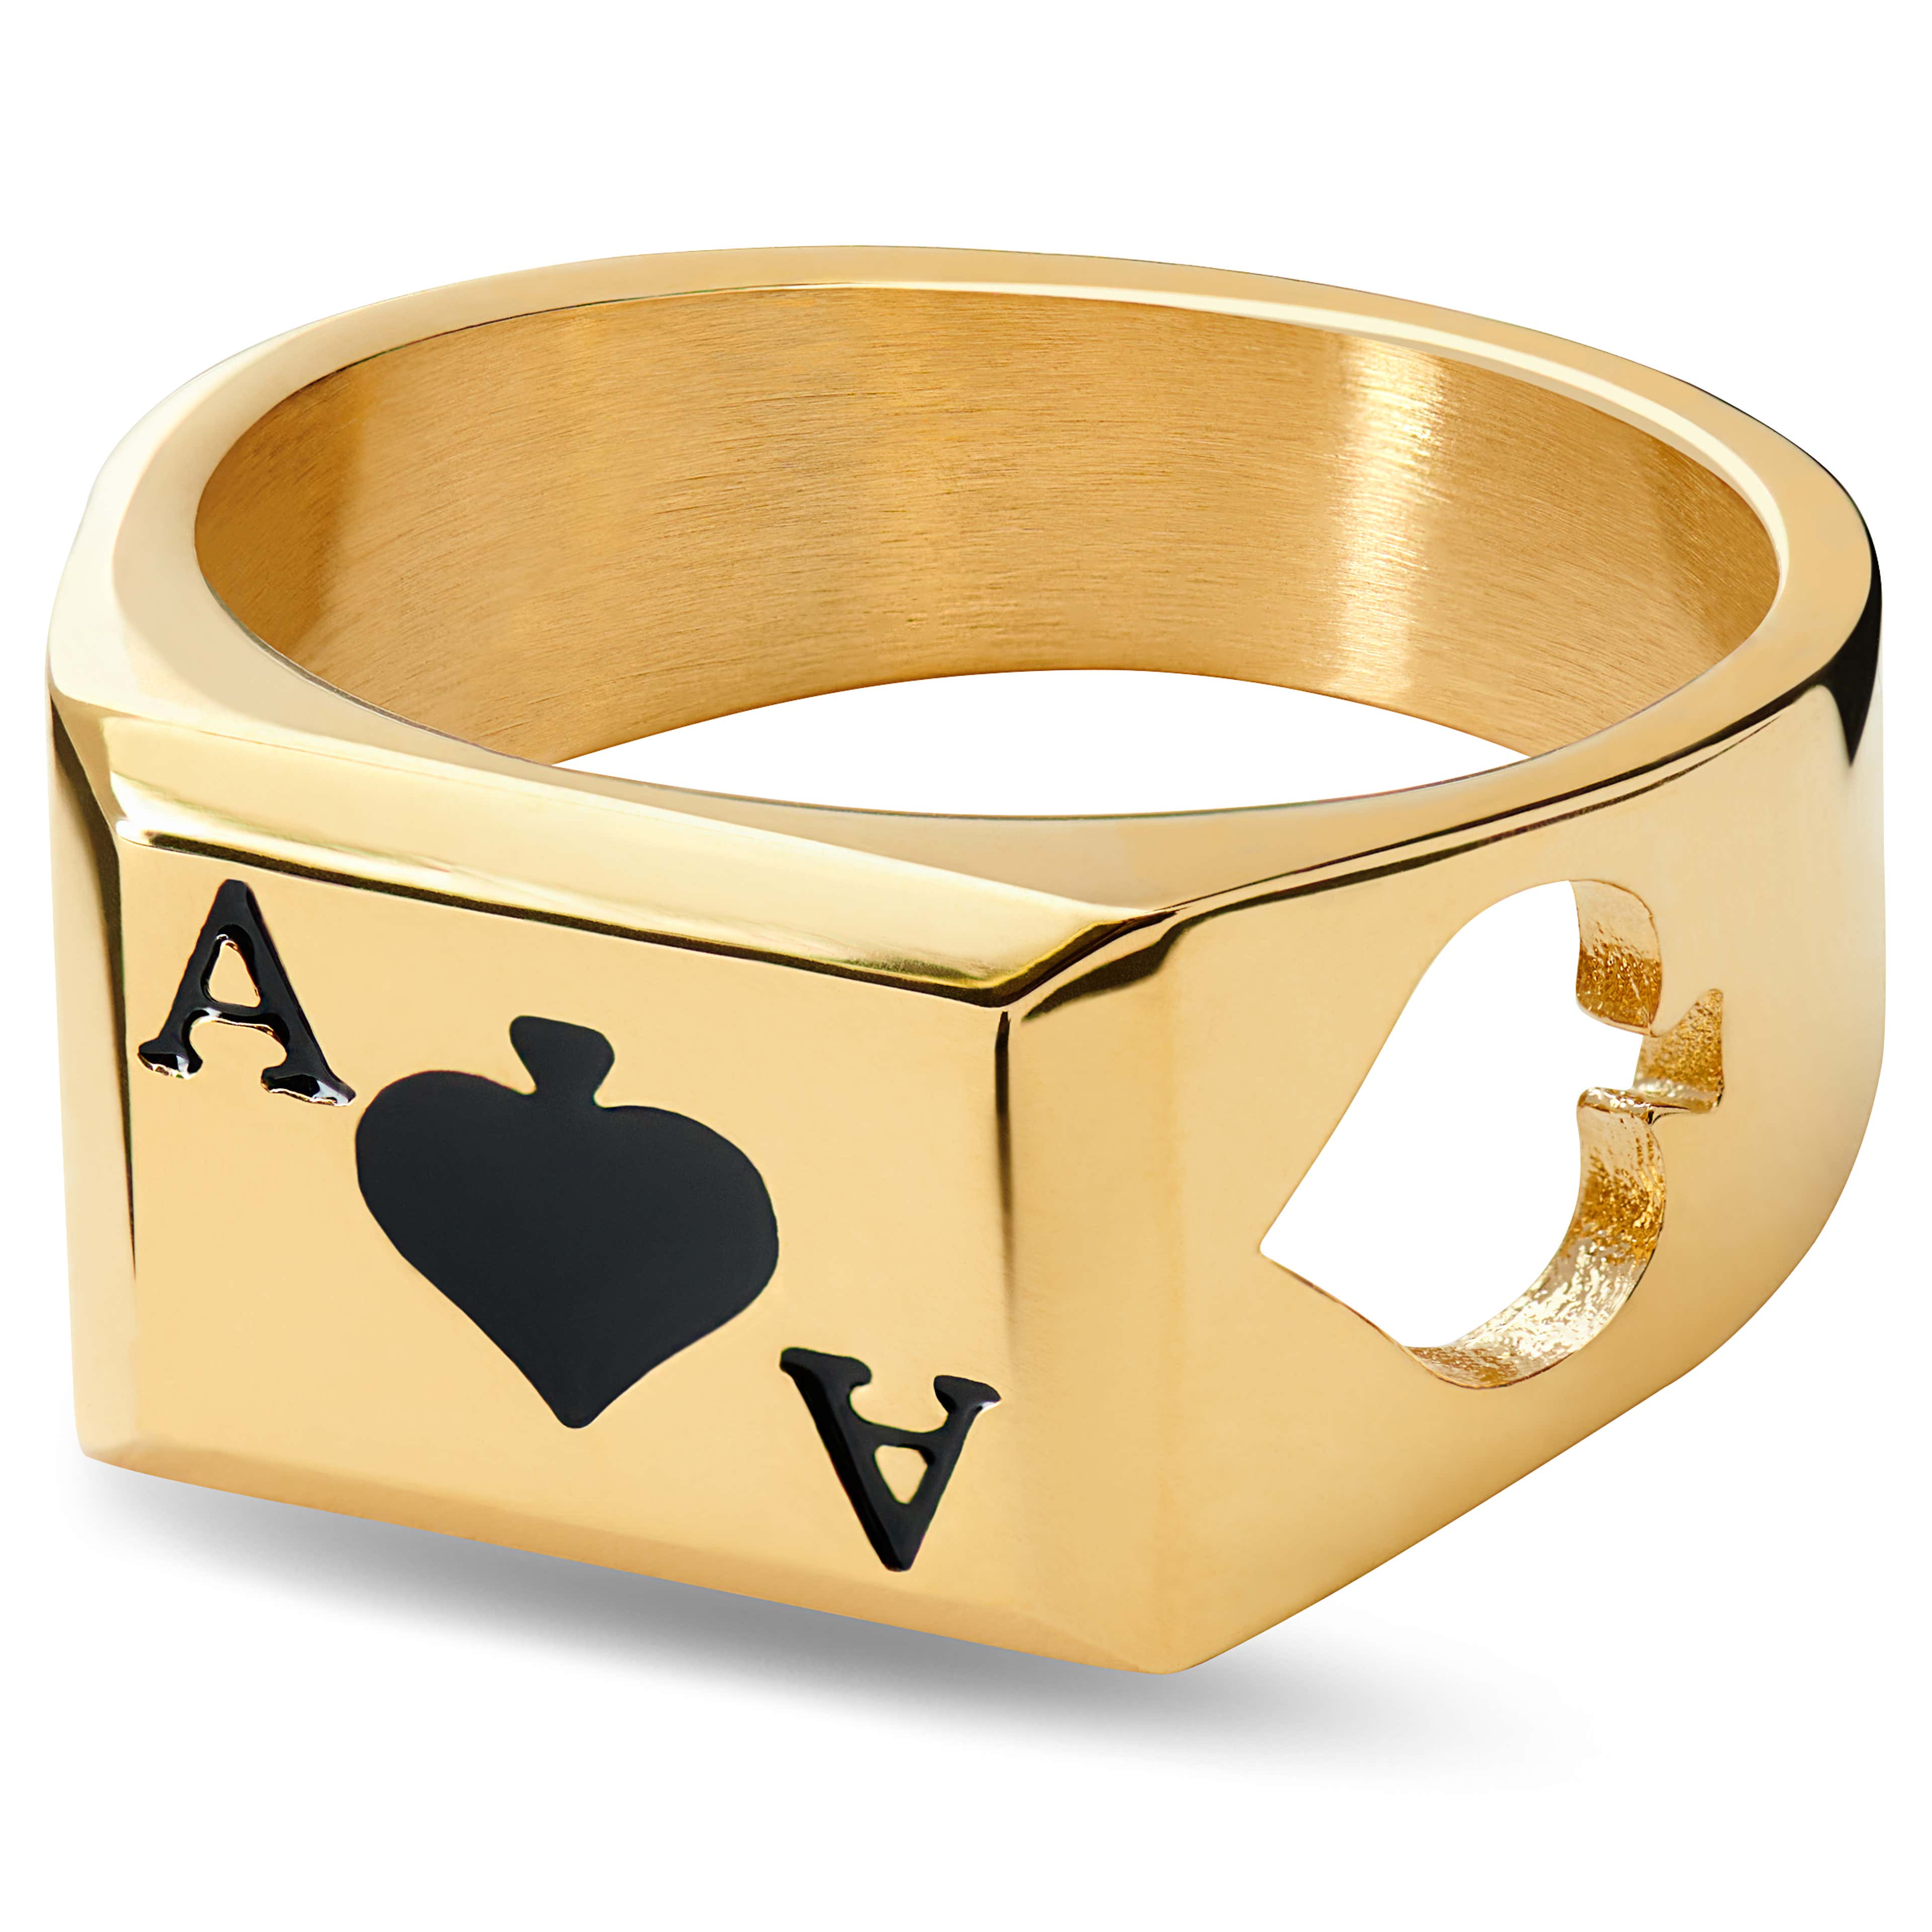 Ace | Arany tónusú pikk ász pecsétgyűrű